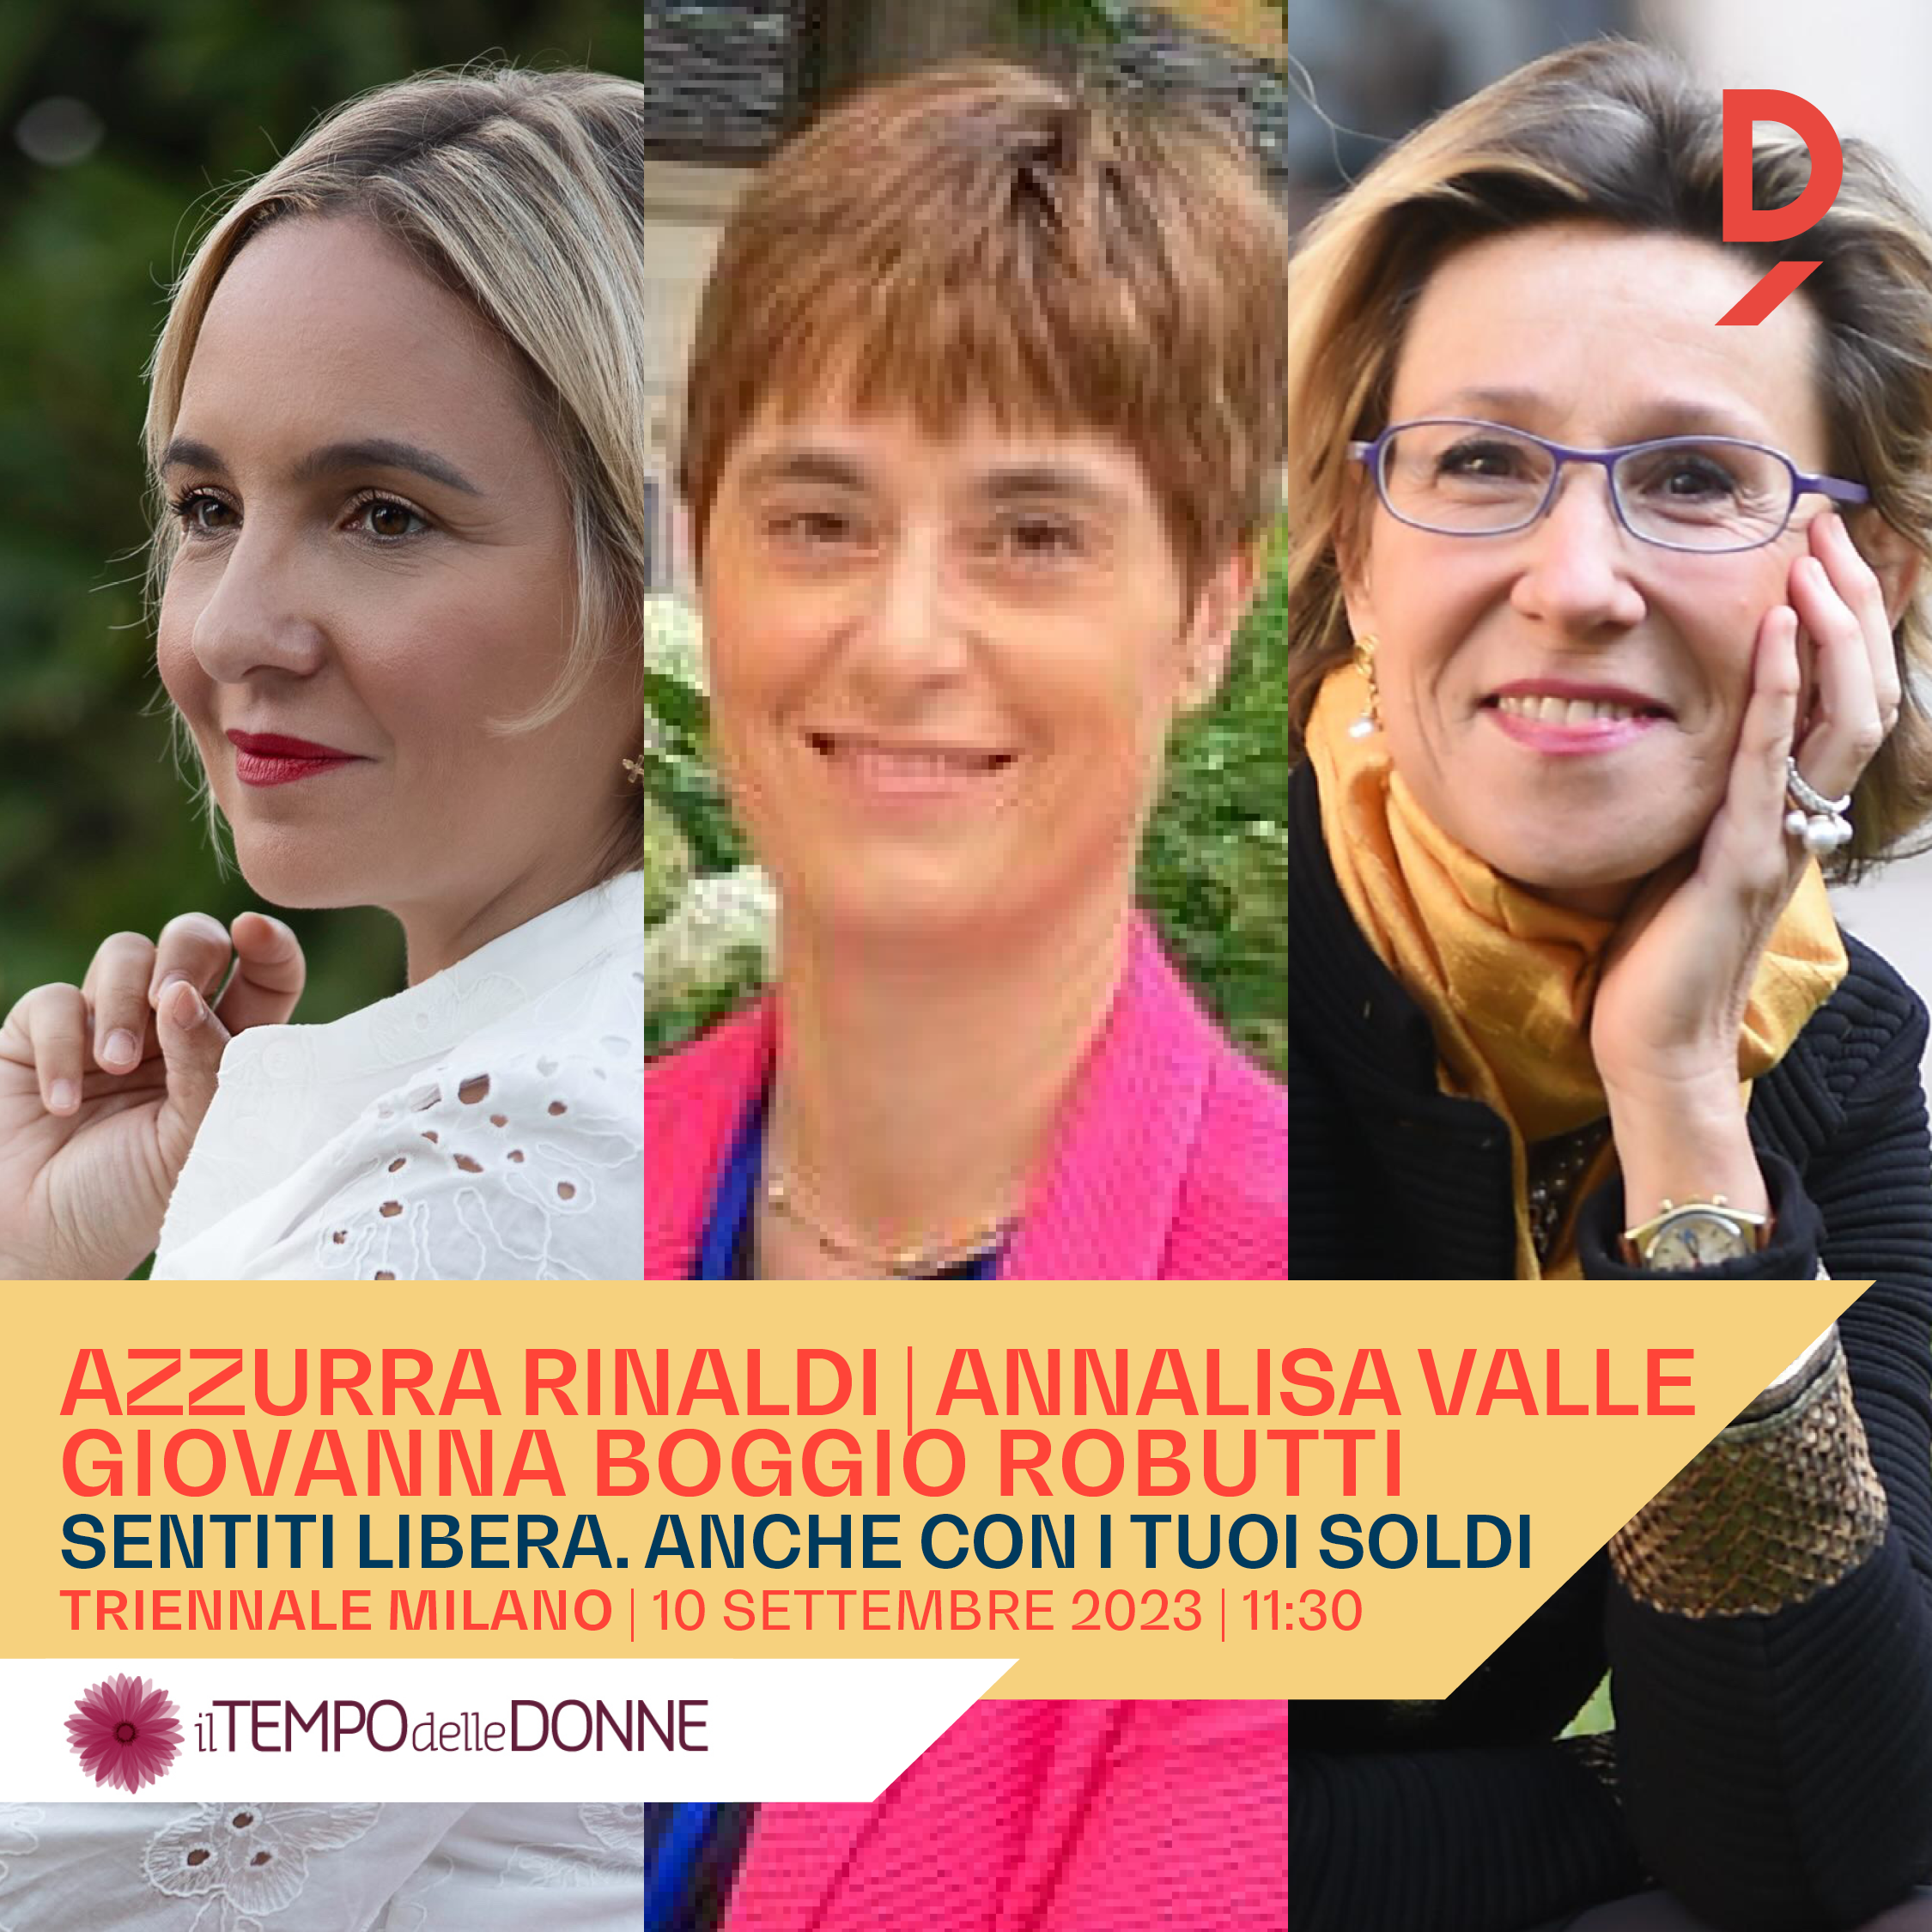 Azzurra Rinaldi, Annalisa Valle, Giovanna Boggio Robutti